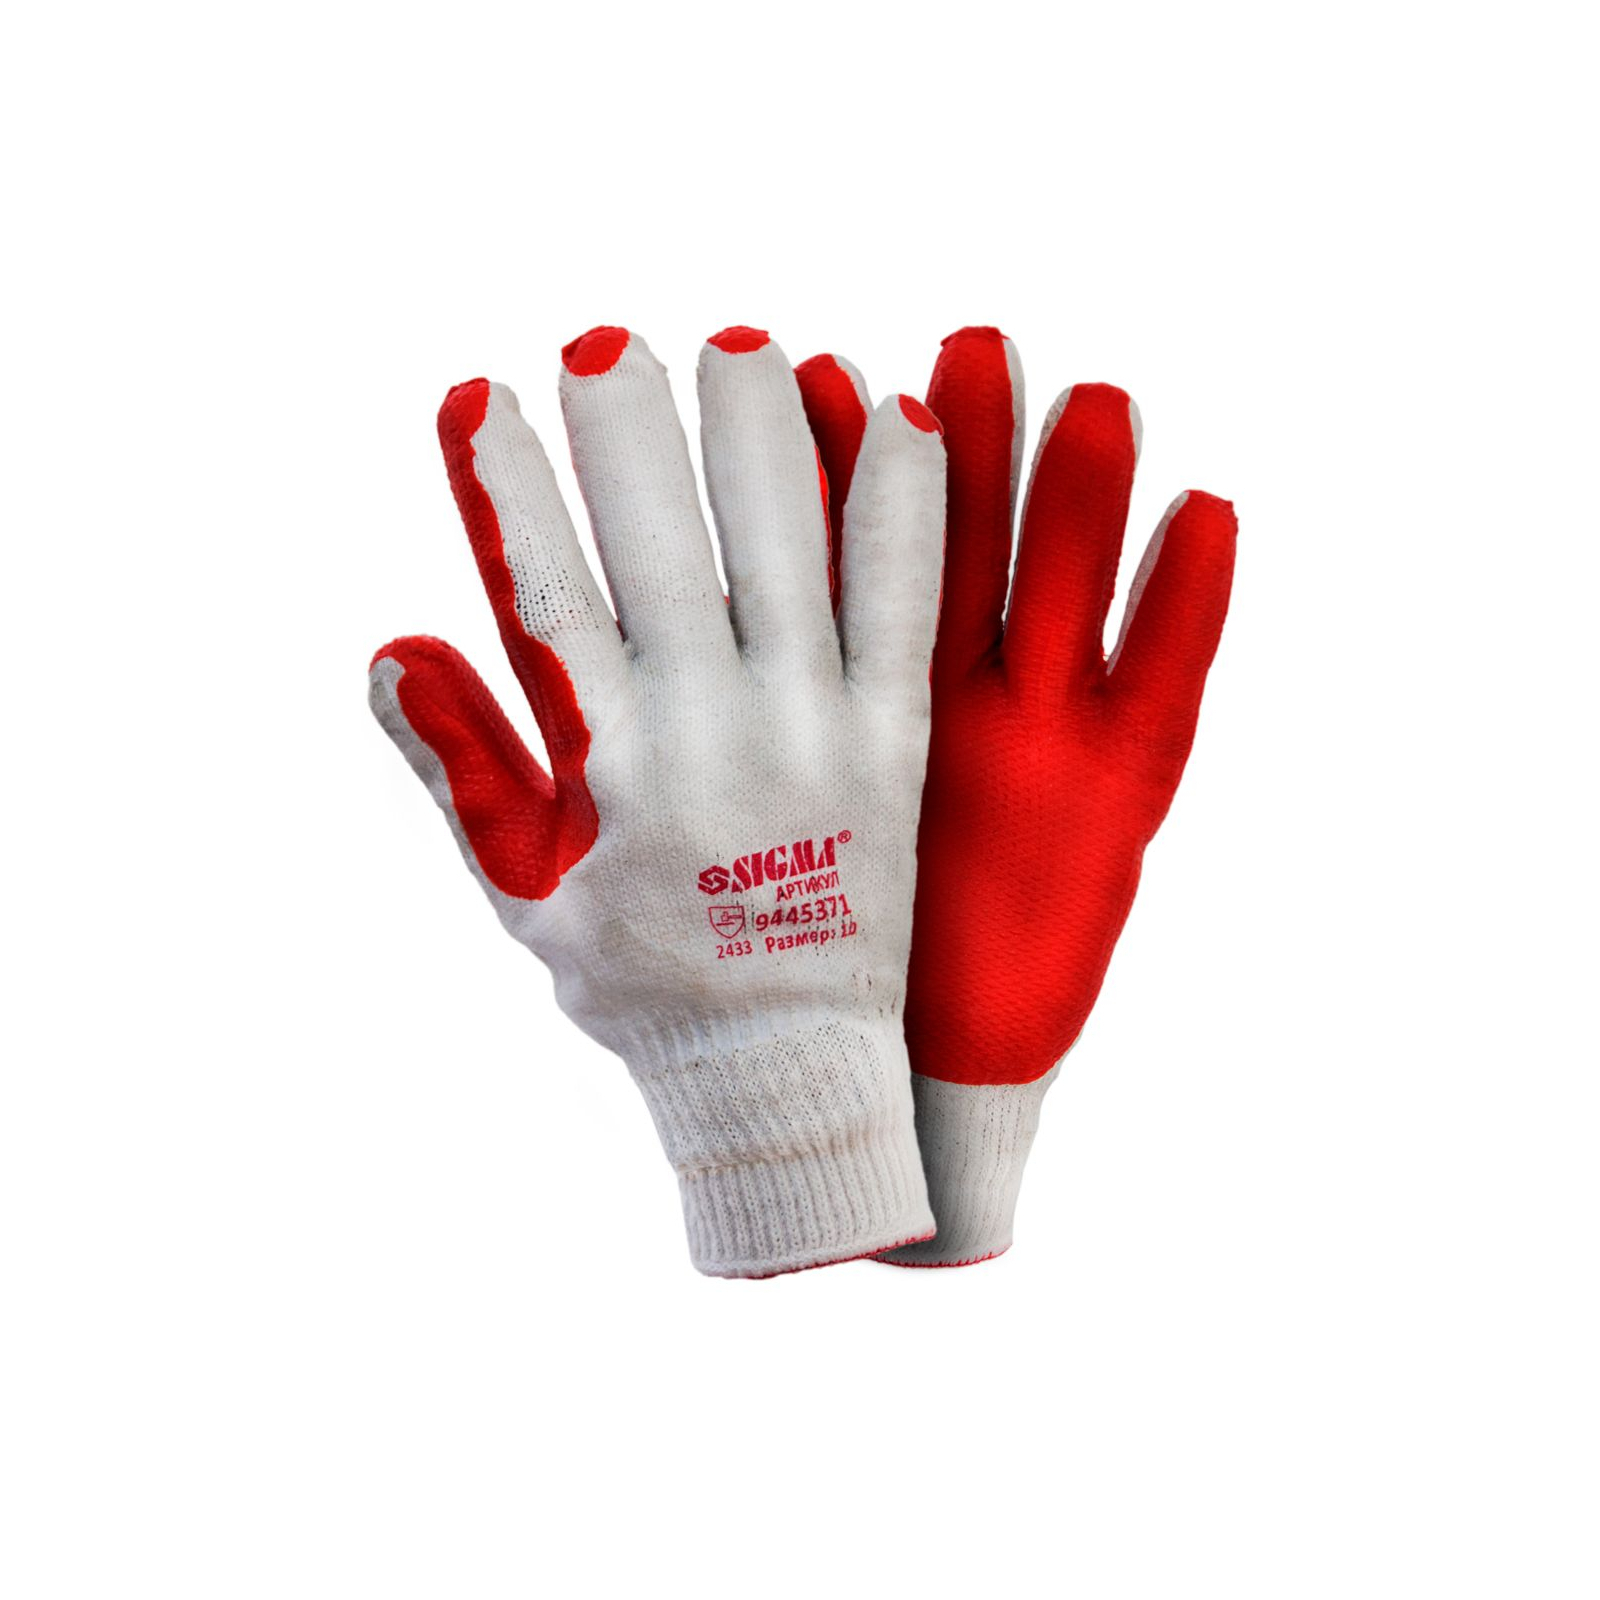 Защитные перчатки Sigma стекольщика (манжет) (9445371)